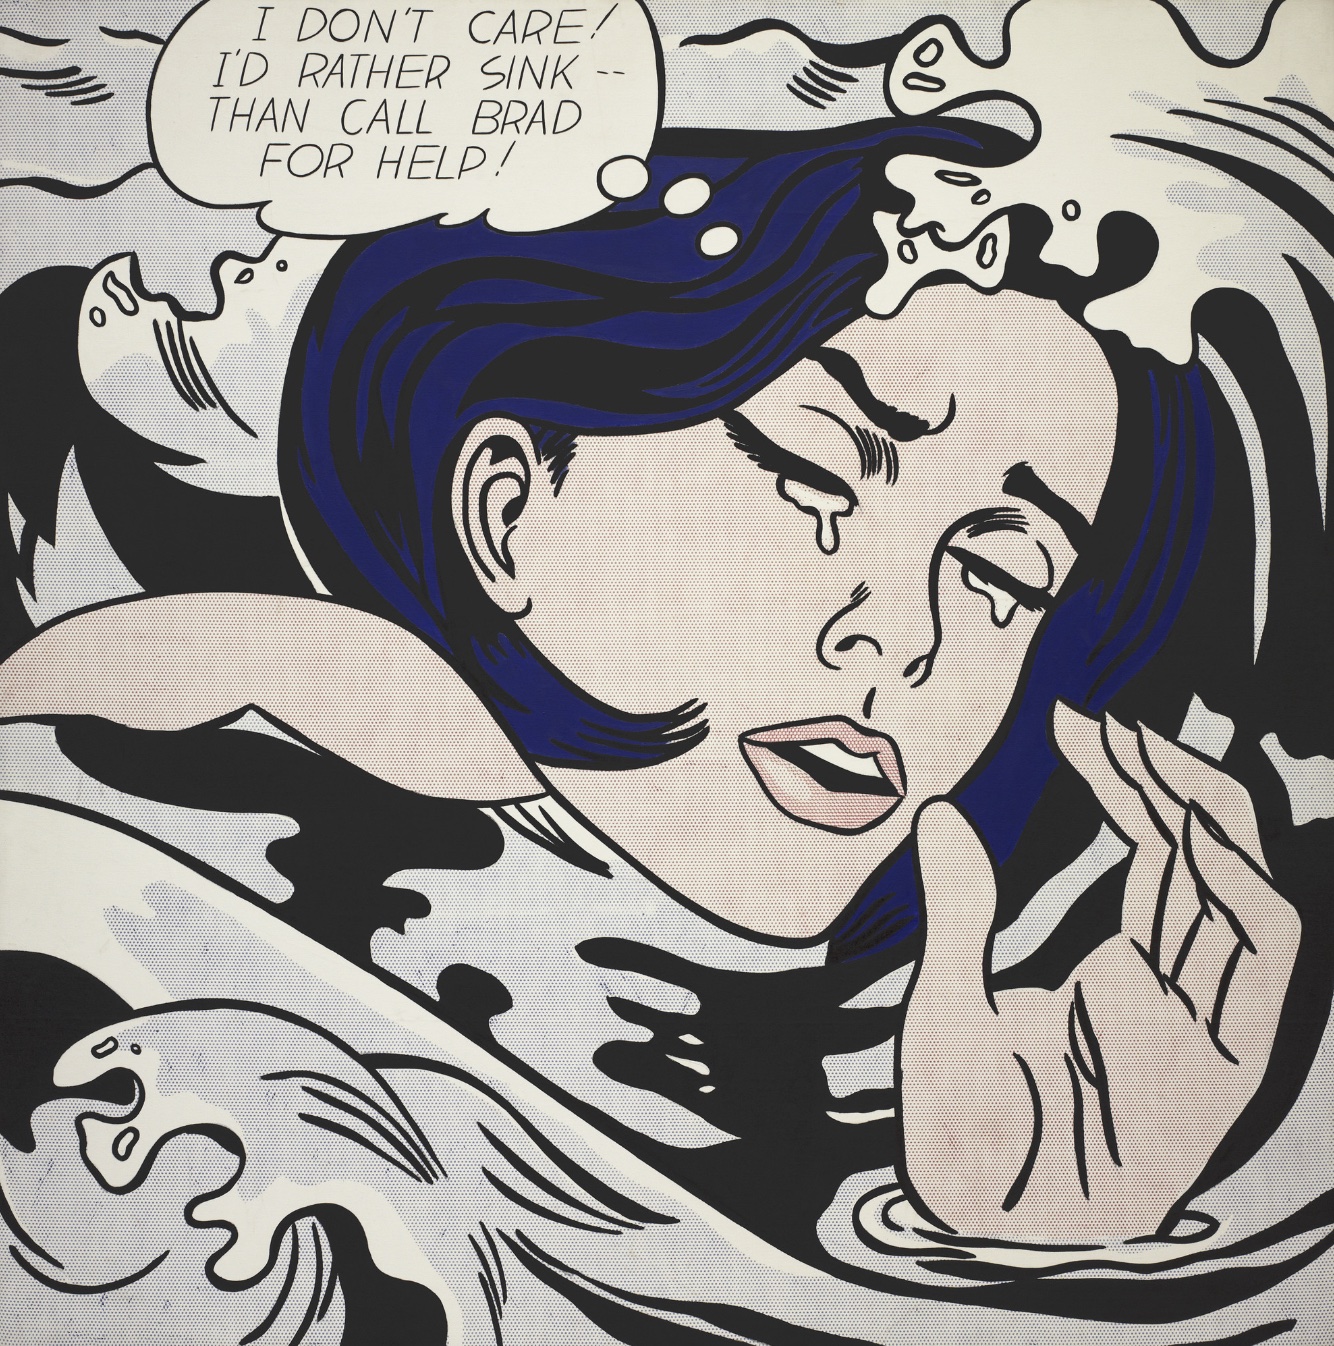 Drowning Girl โดย Roy Lichtenstein — นำเสนอภาพผู้หญิงที่กำลังร้องไห้จากหนังสือการ์ตูนด้านบน